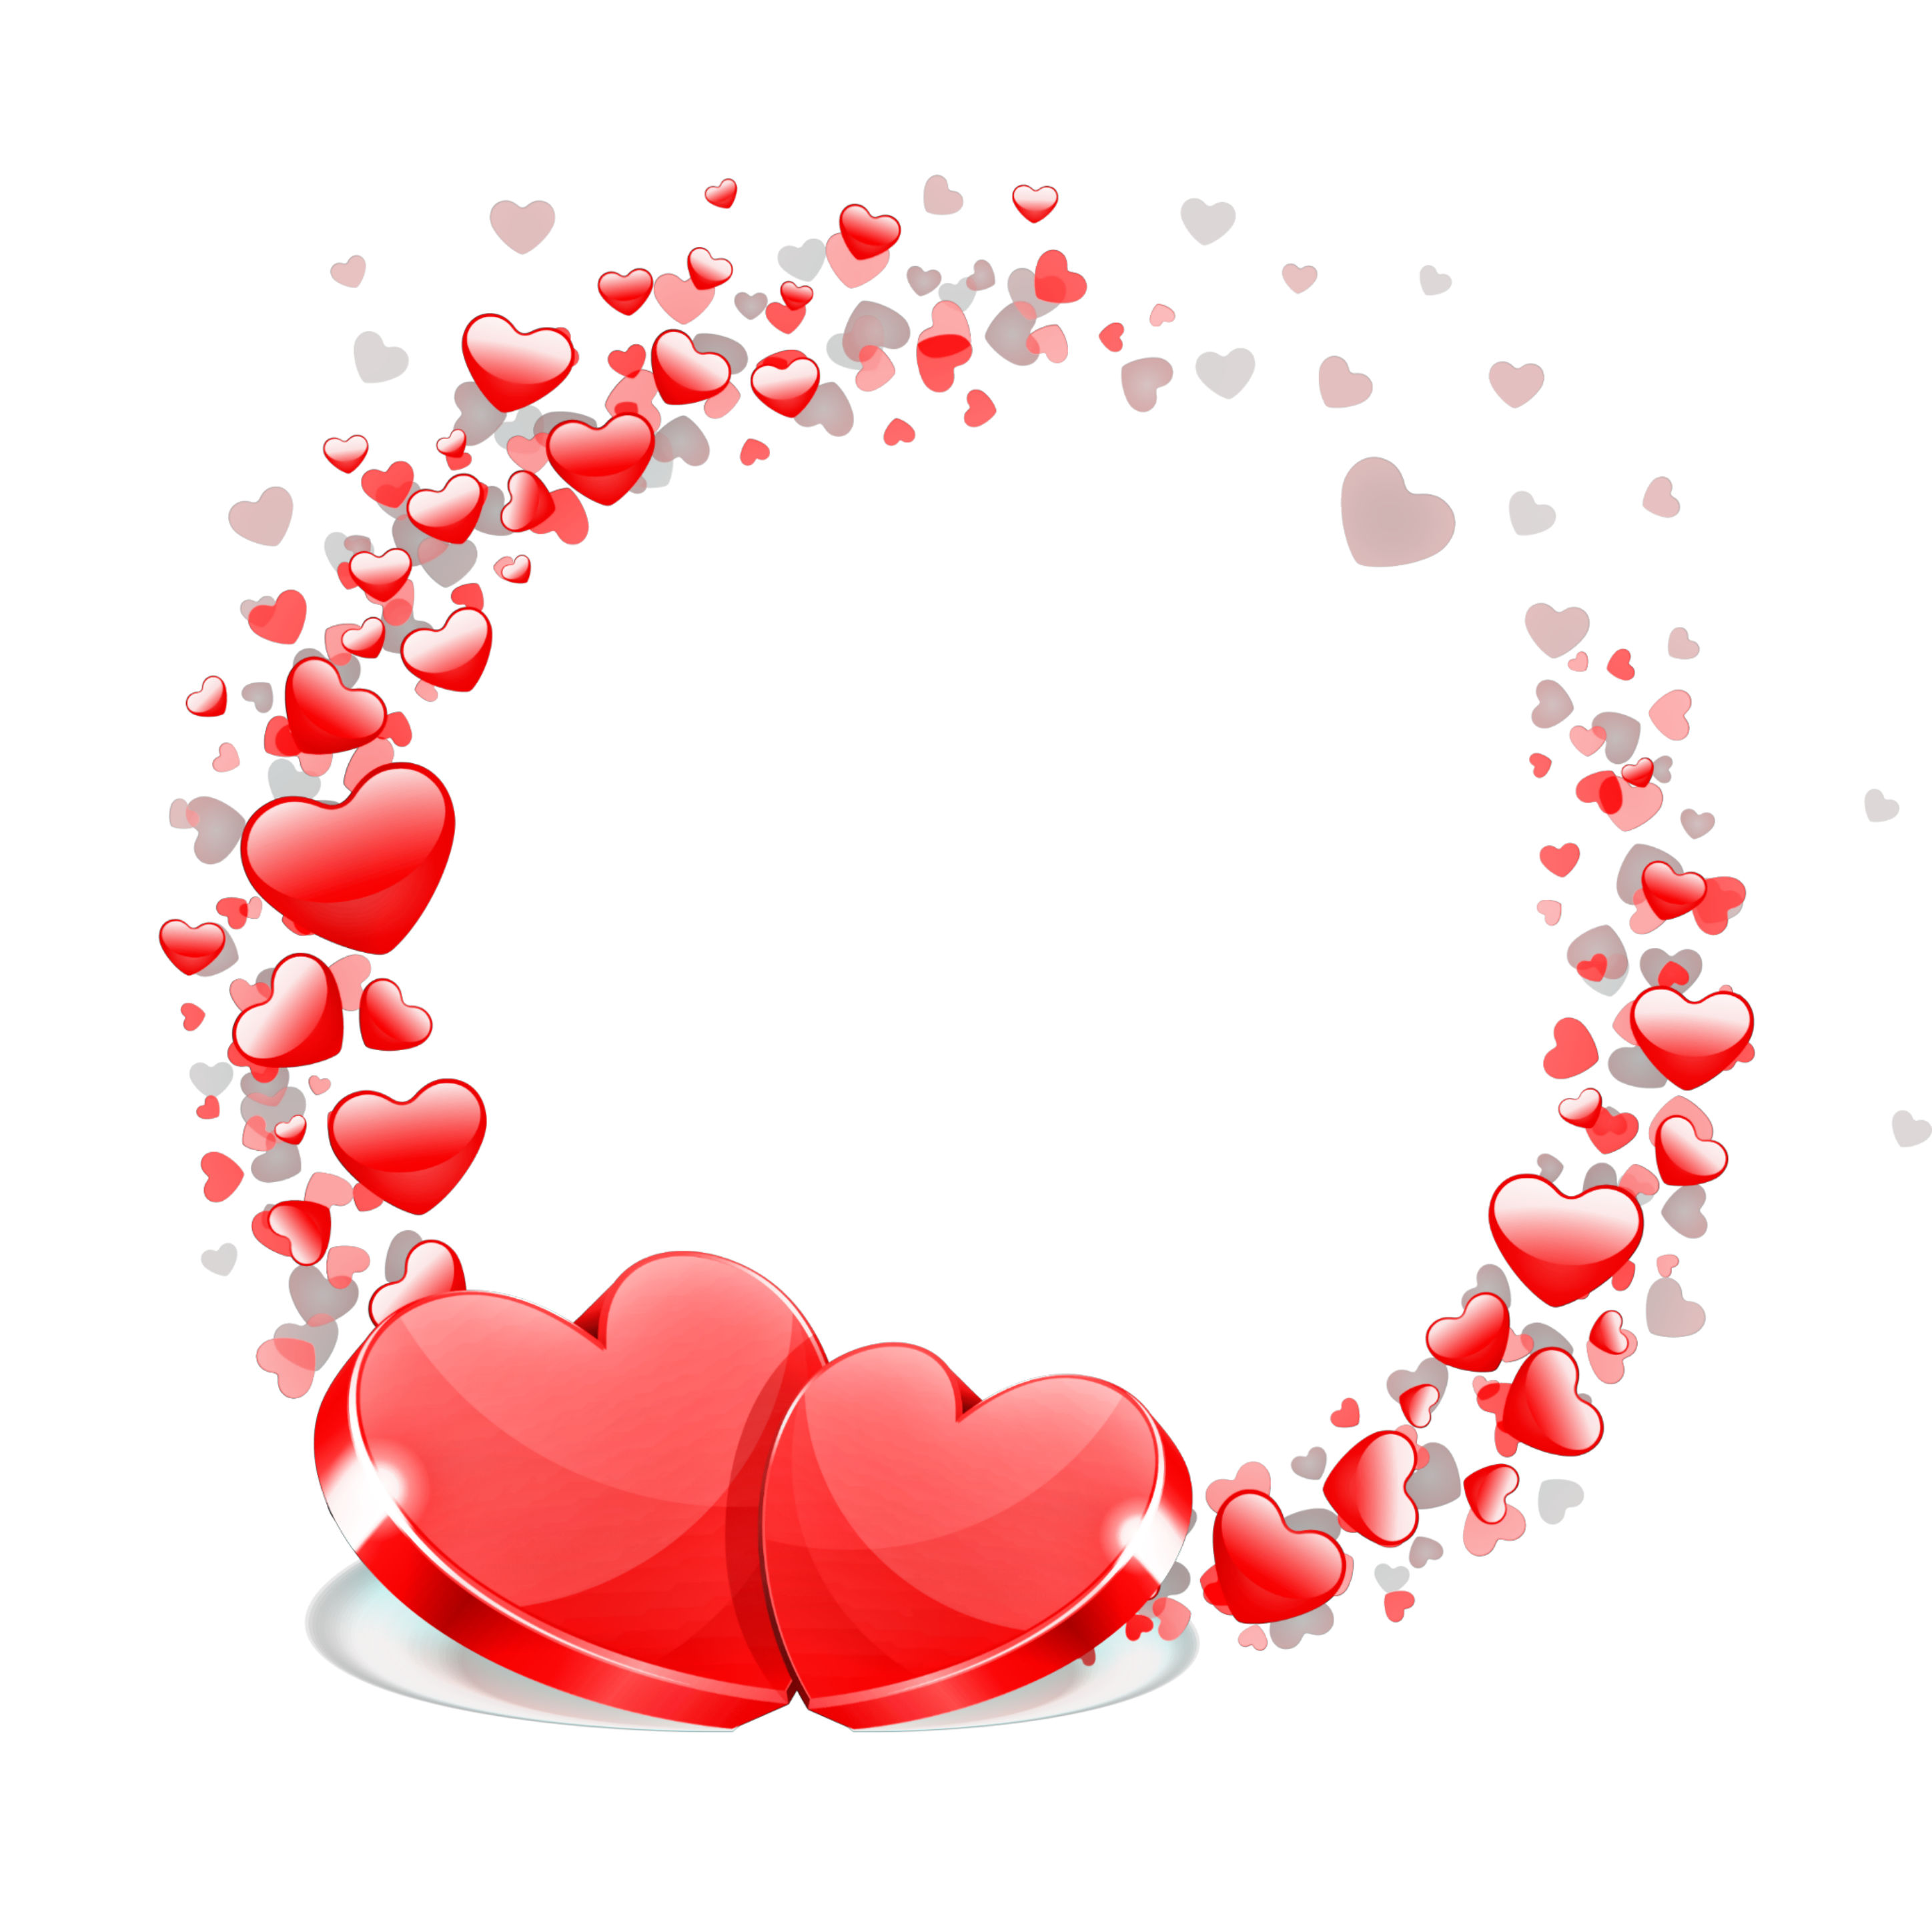 love heart hearts heartshapes sticker by @alteregoss